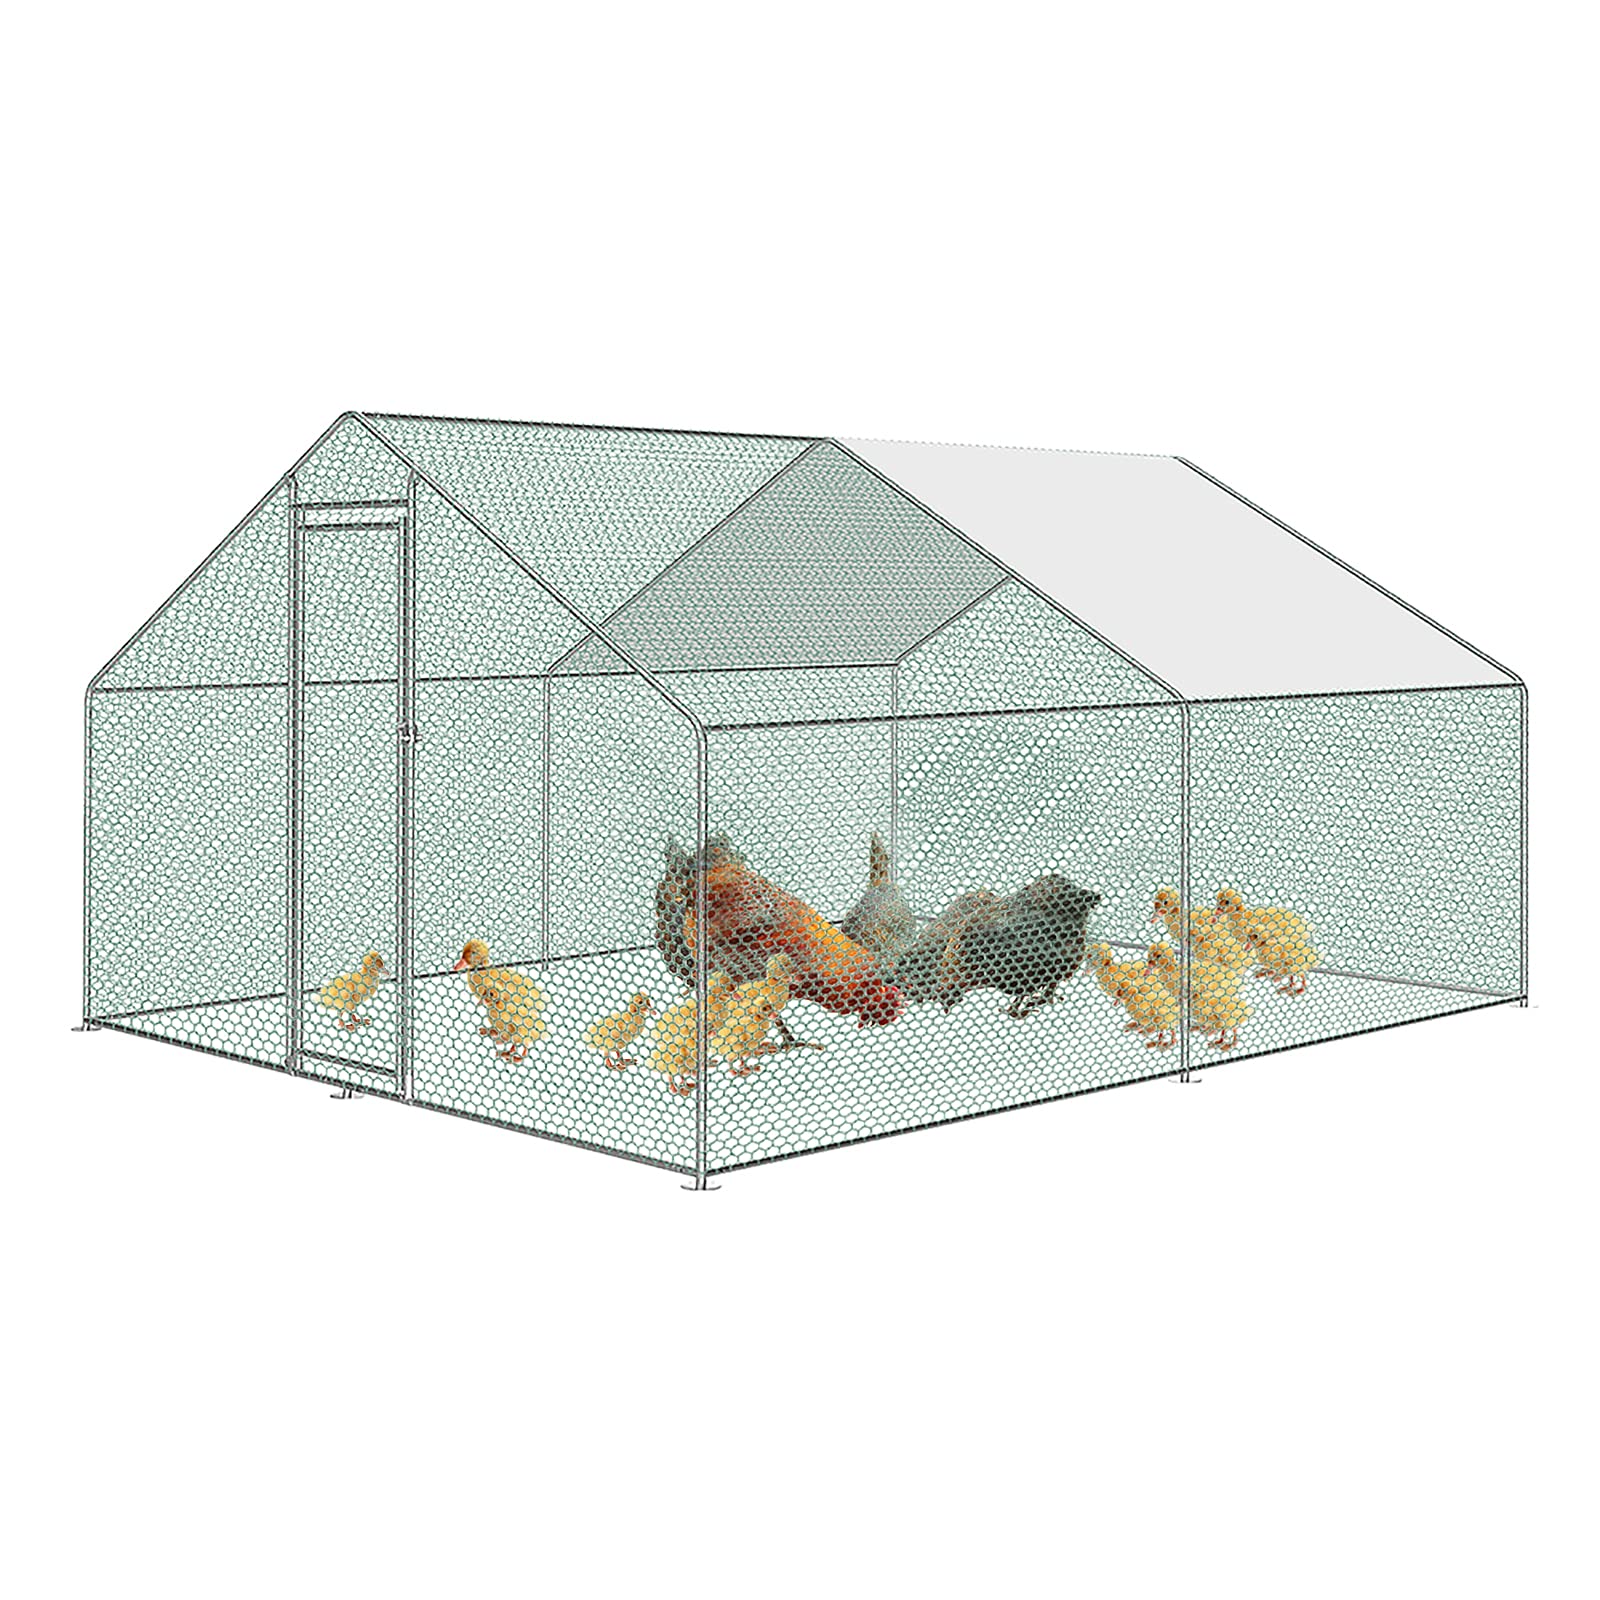 Froadp Hühnerstall Voliere Outdoor Große Freilaufgehege Hühner mit PE-Sonnenschutzhülle Hühnerkäfig Hühnergehege Freilaufgehege mit Verzinktem Stahlrahmen für Kaninchen Hühner Geflügelzucht (3x4x2m)